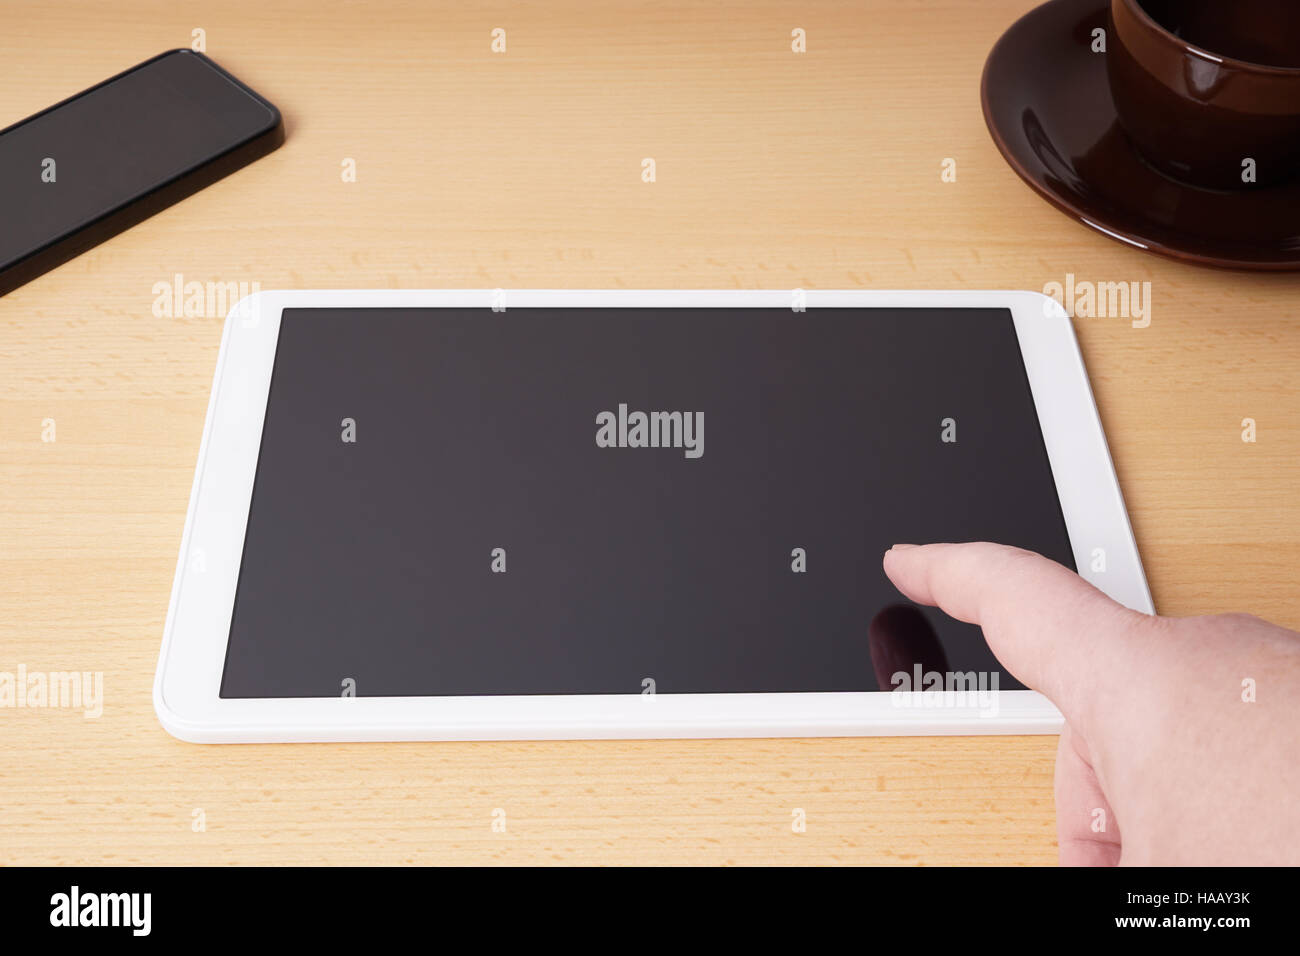 Toucher du doigt sur l'écran tactile vierge tablet computer Banque D'Images